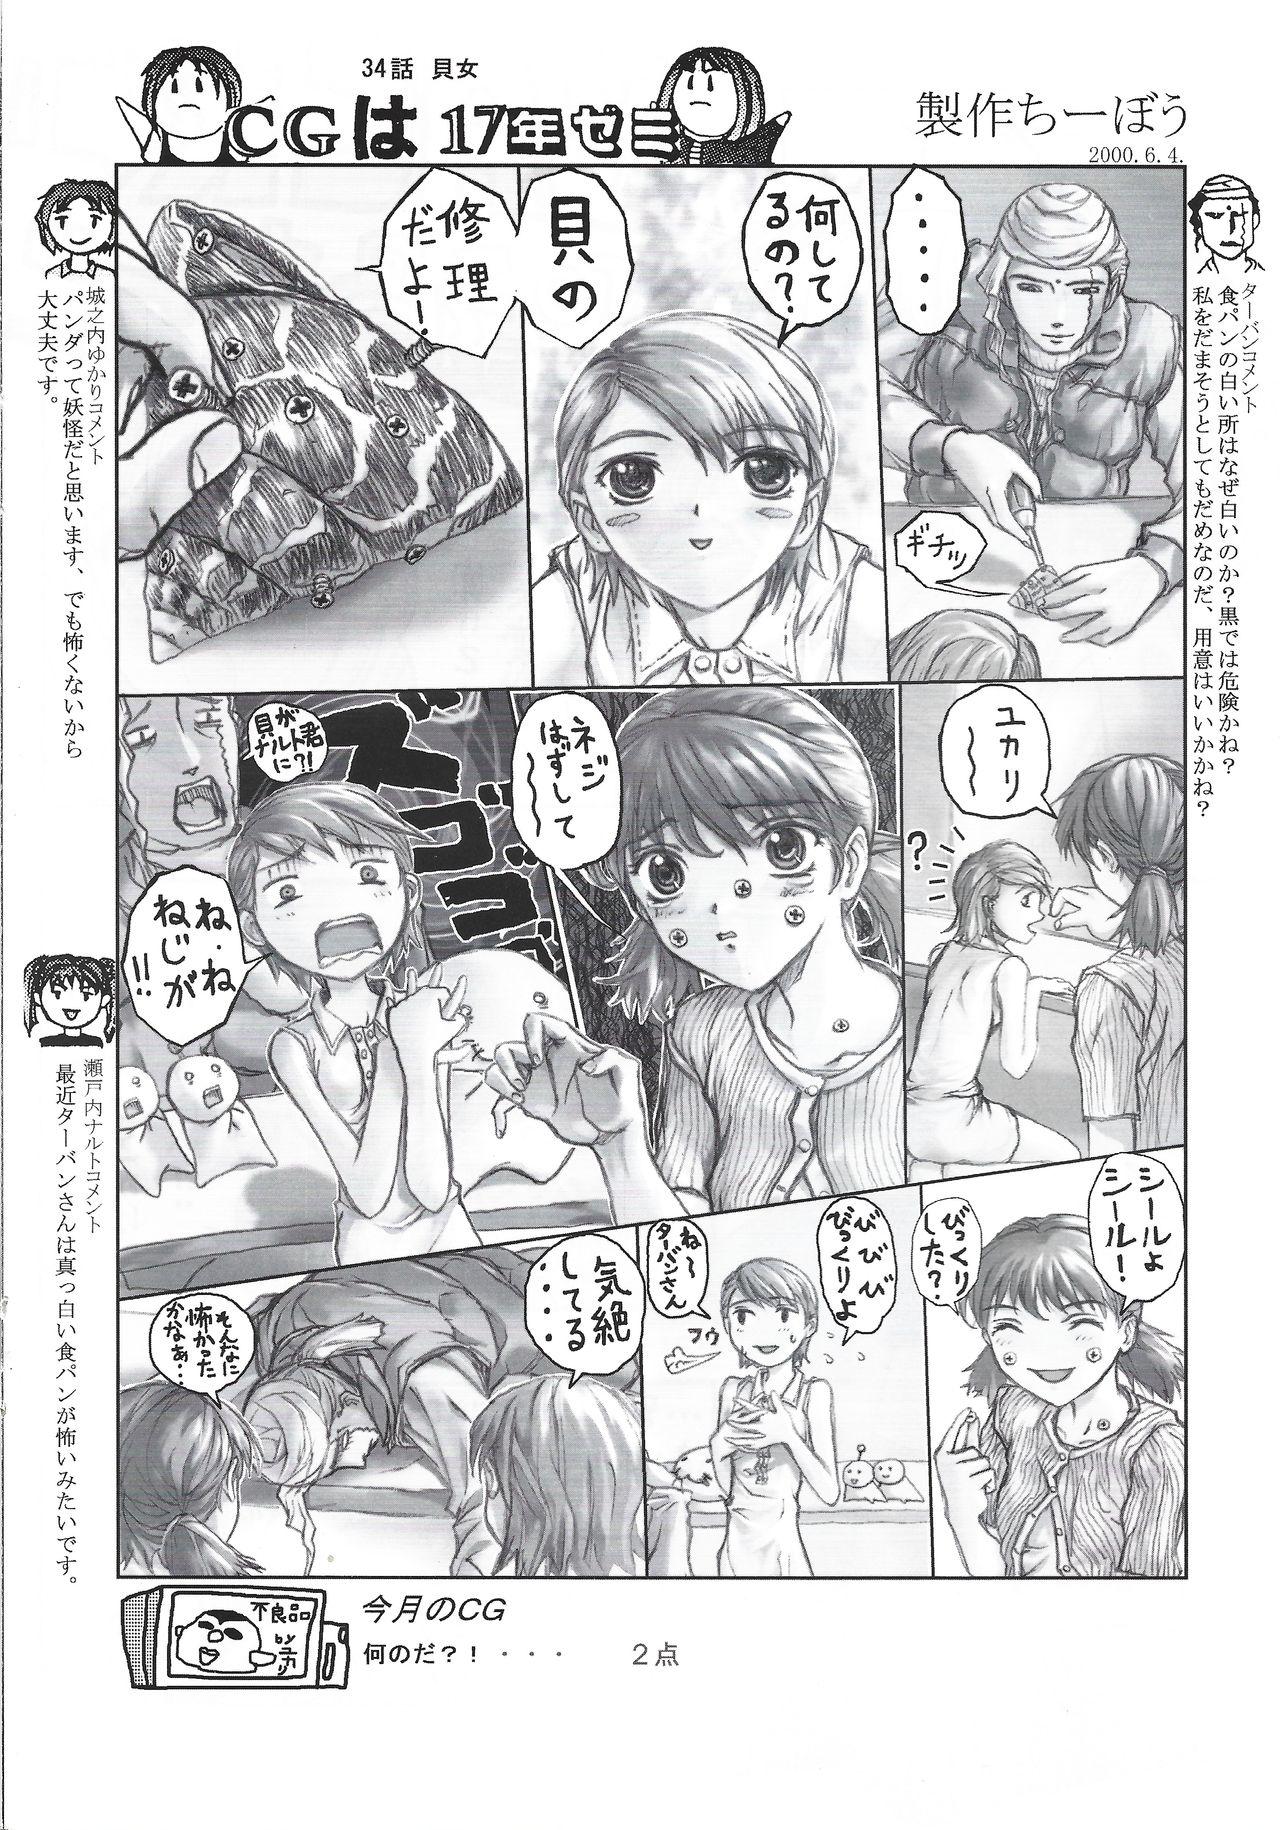 Arisu no Denchi Bakudan Vol. 12 14